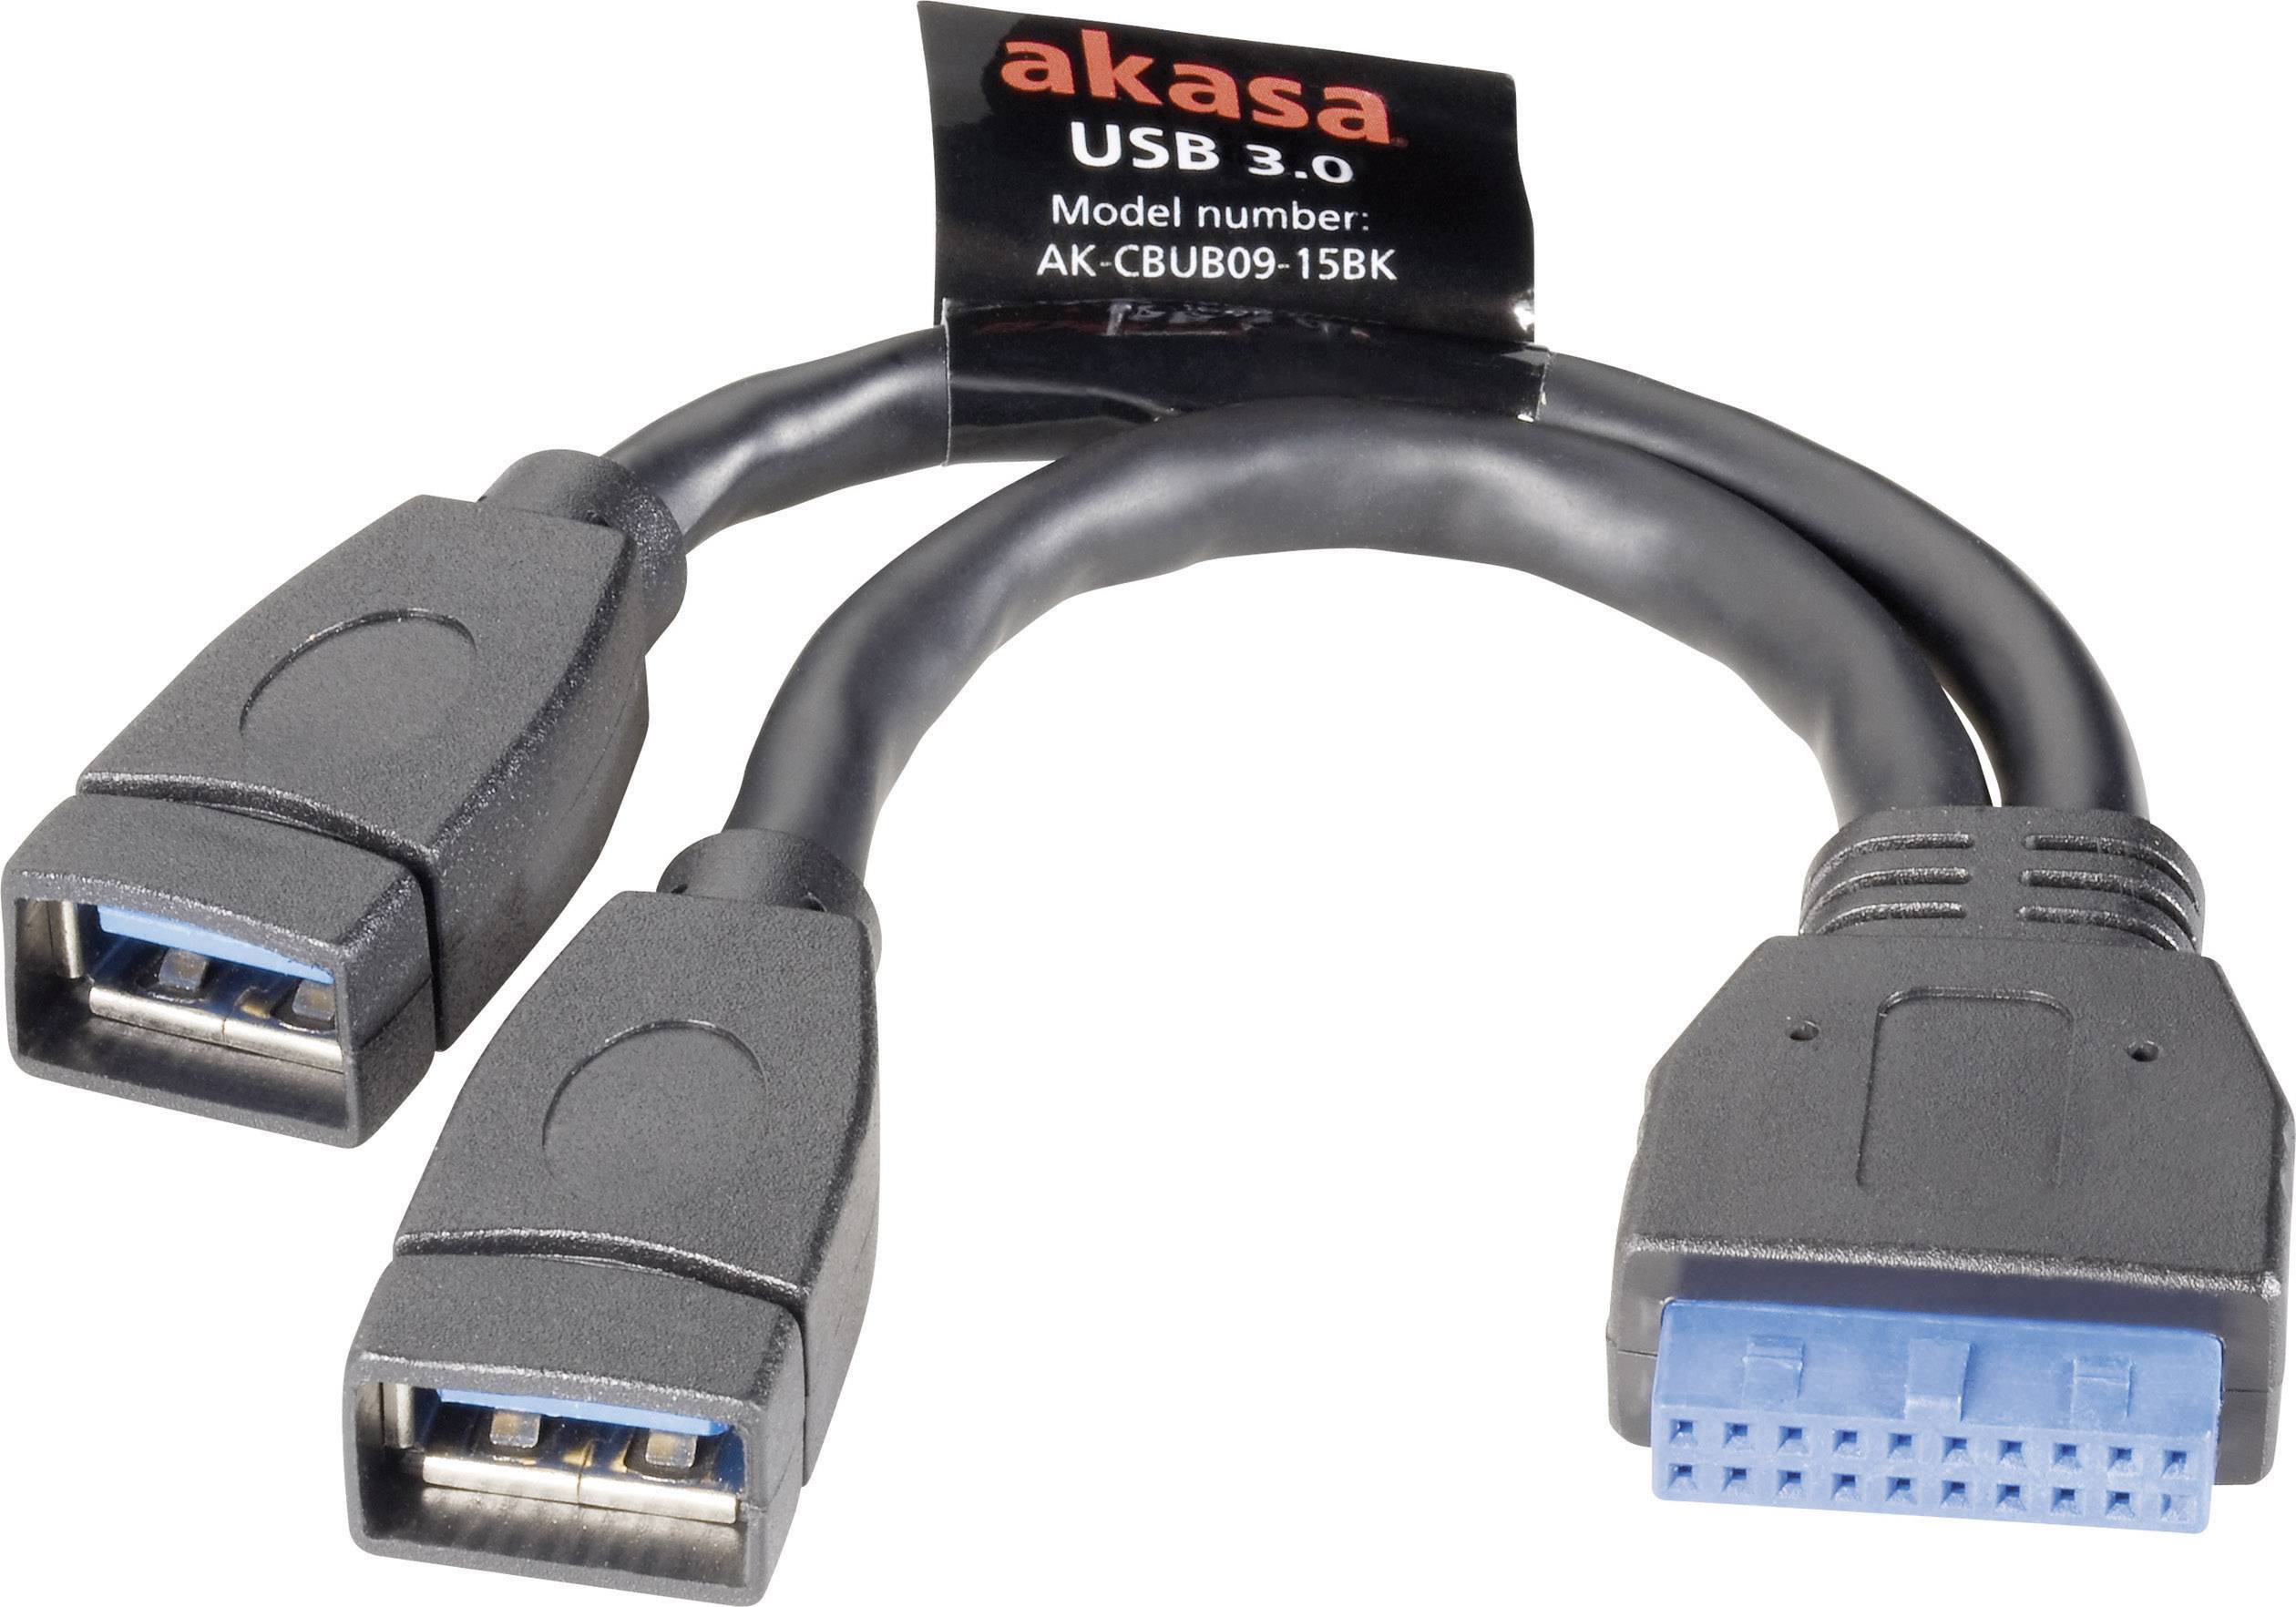 USB cable 3.2 1st Gen (USB 3.0 / USB 3.1 1st Gen) 19-pin , USB-A 0.15 m Black gold plated con | Conrad.com